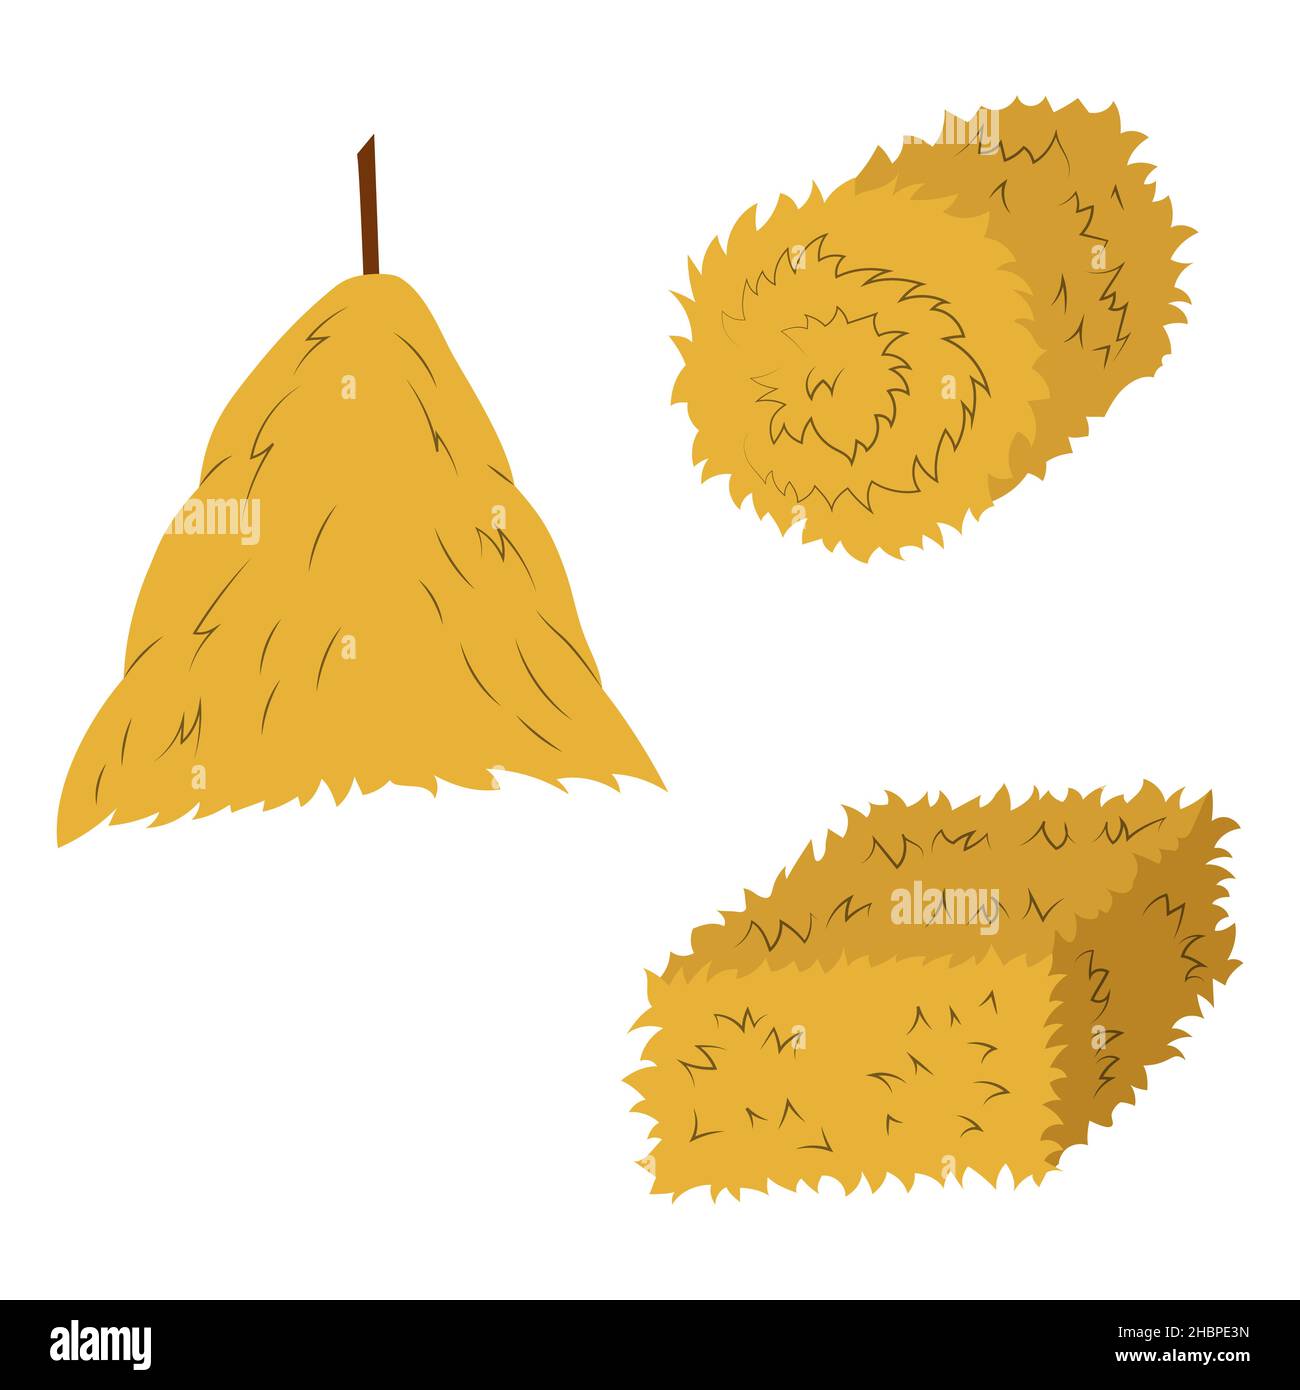 Eine Reihe von Vektorgrafiken von Ballen und Heuhaufen. Flache gelbe Heuhaufen, runde Ballen Weizenstroh Stock Vektor